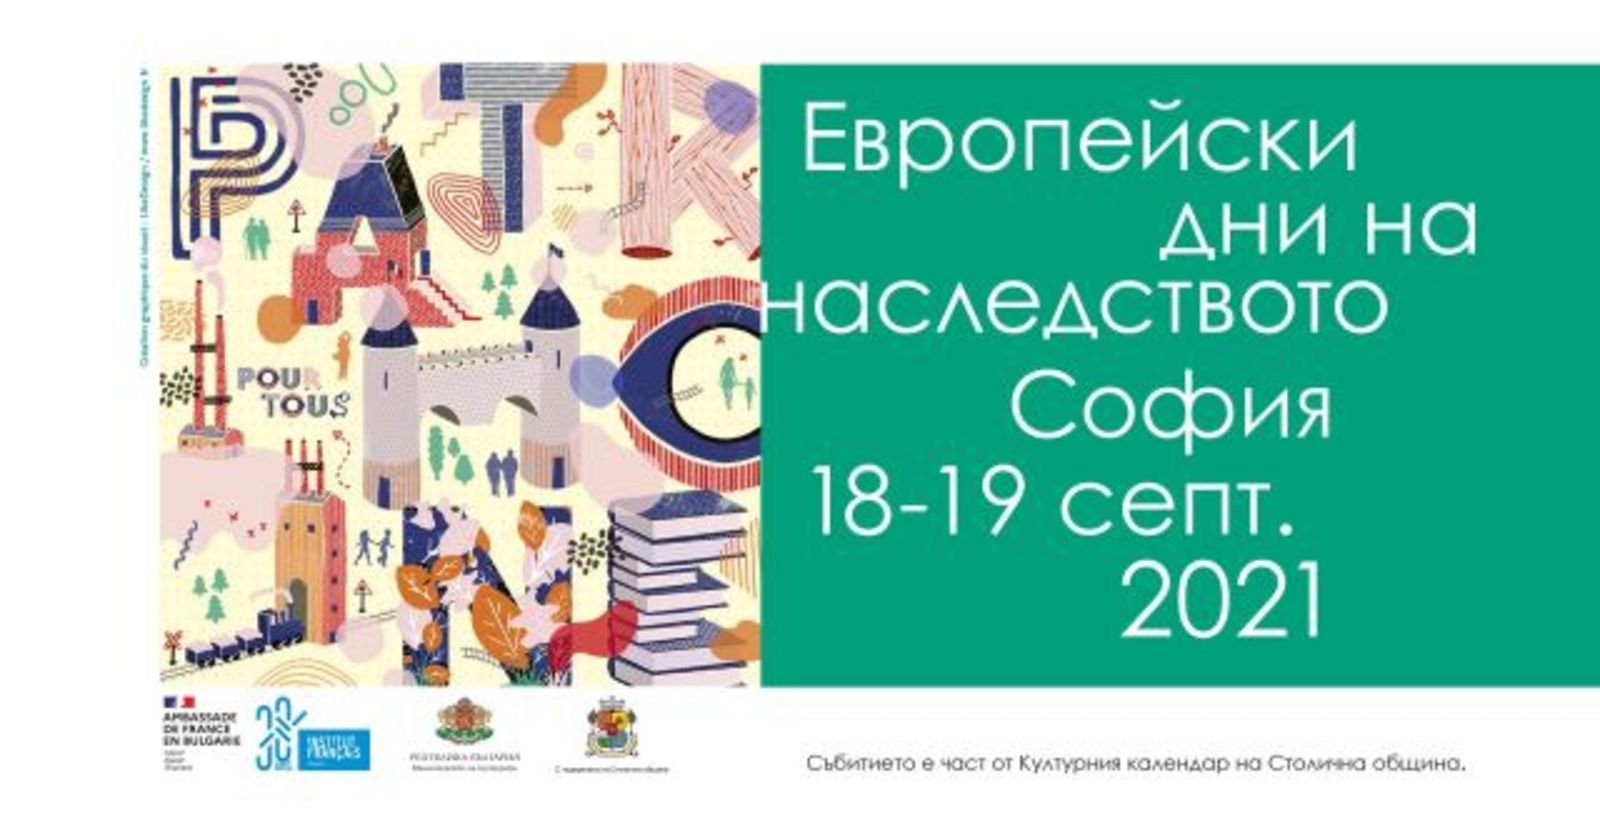 European Heritage Days - Sofia 2021